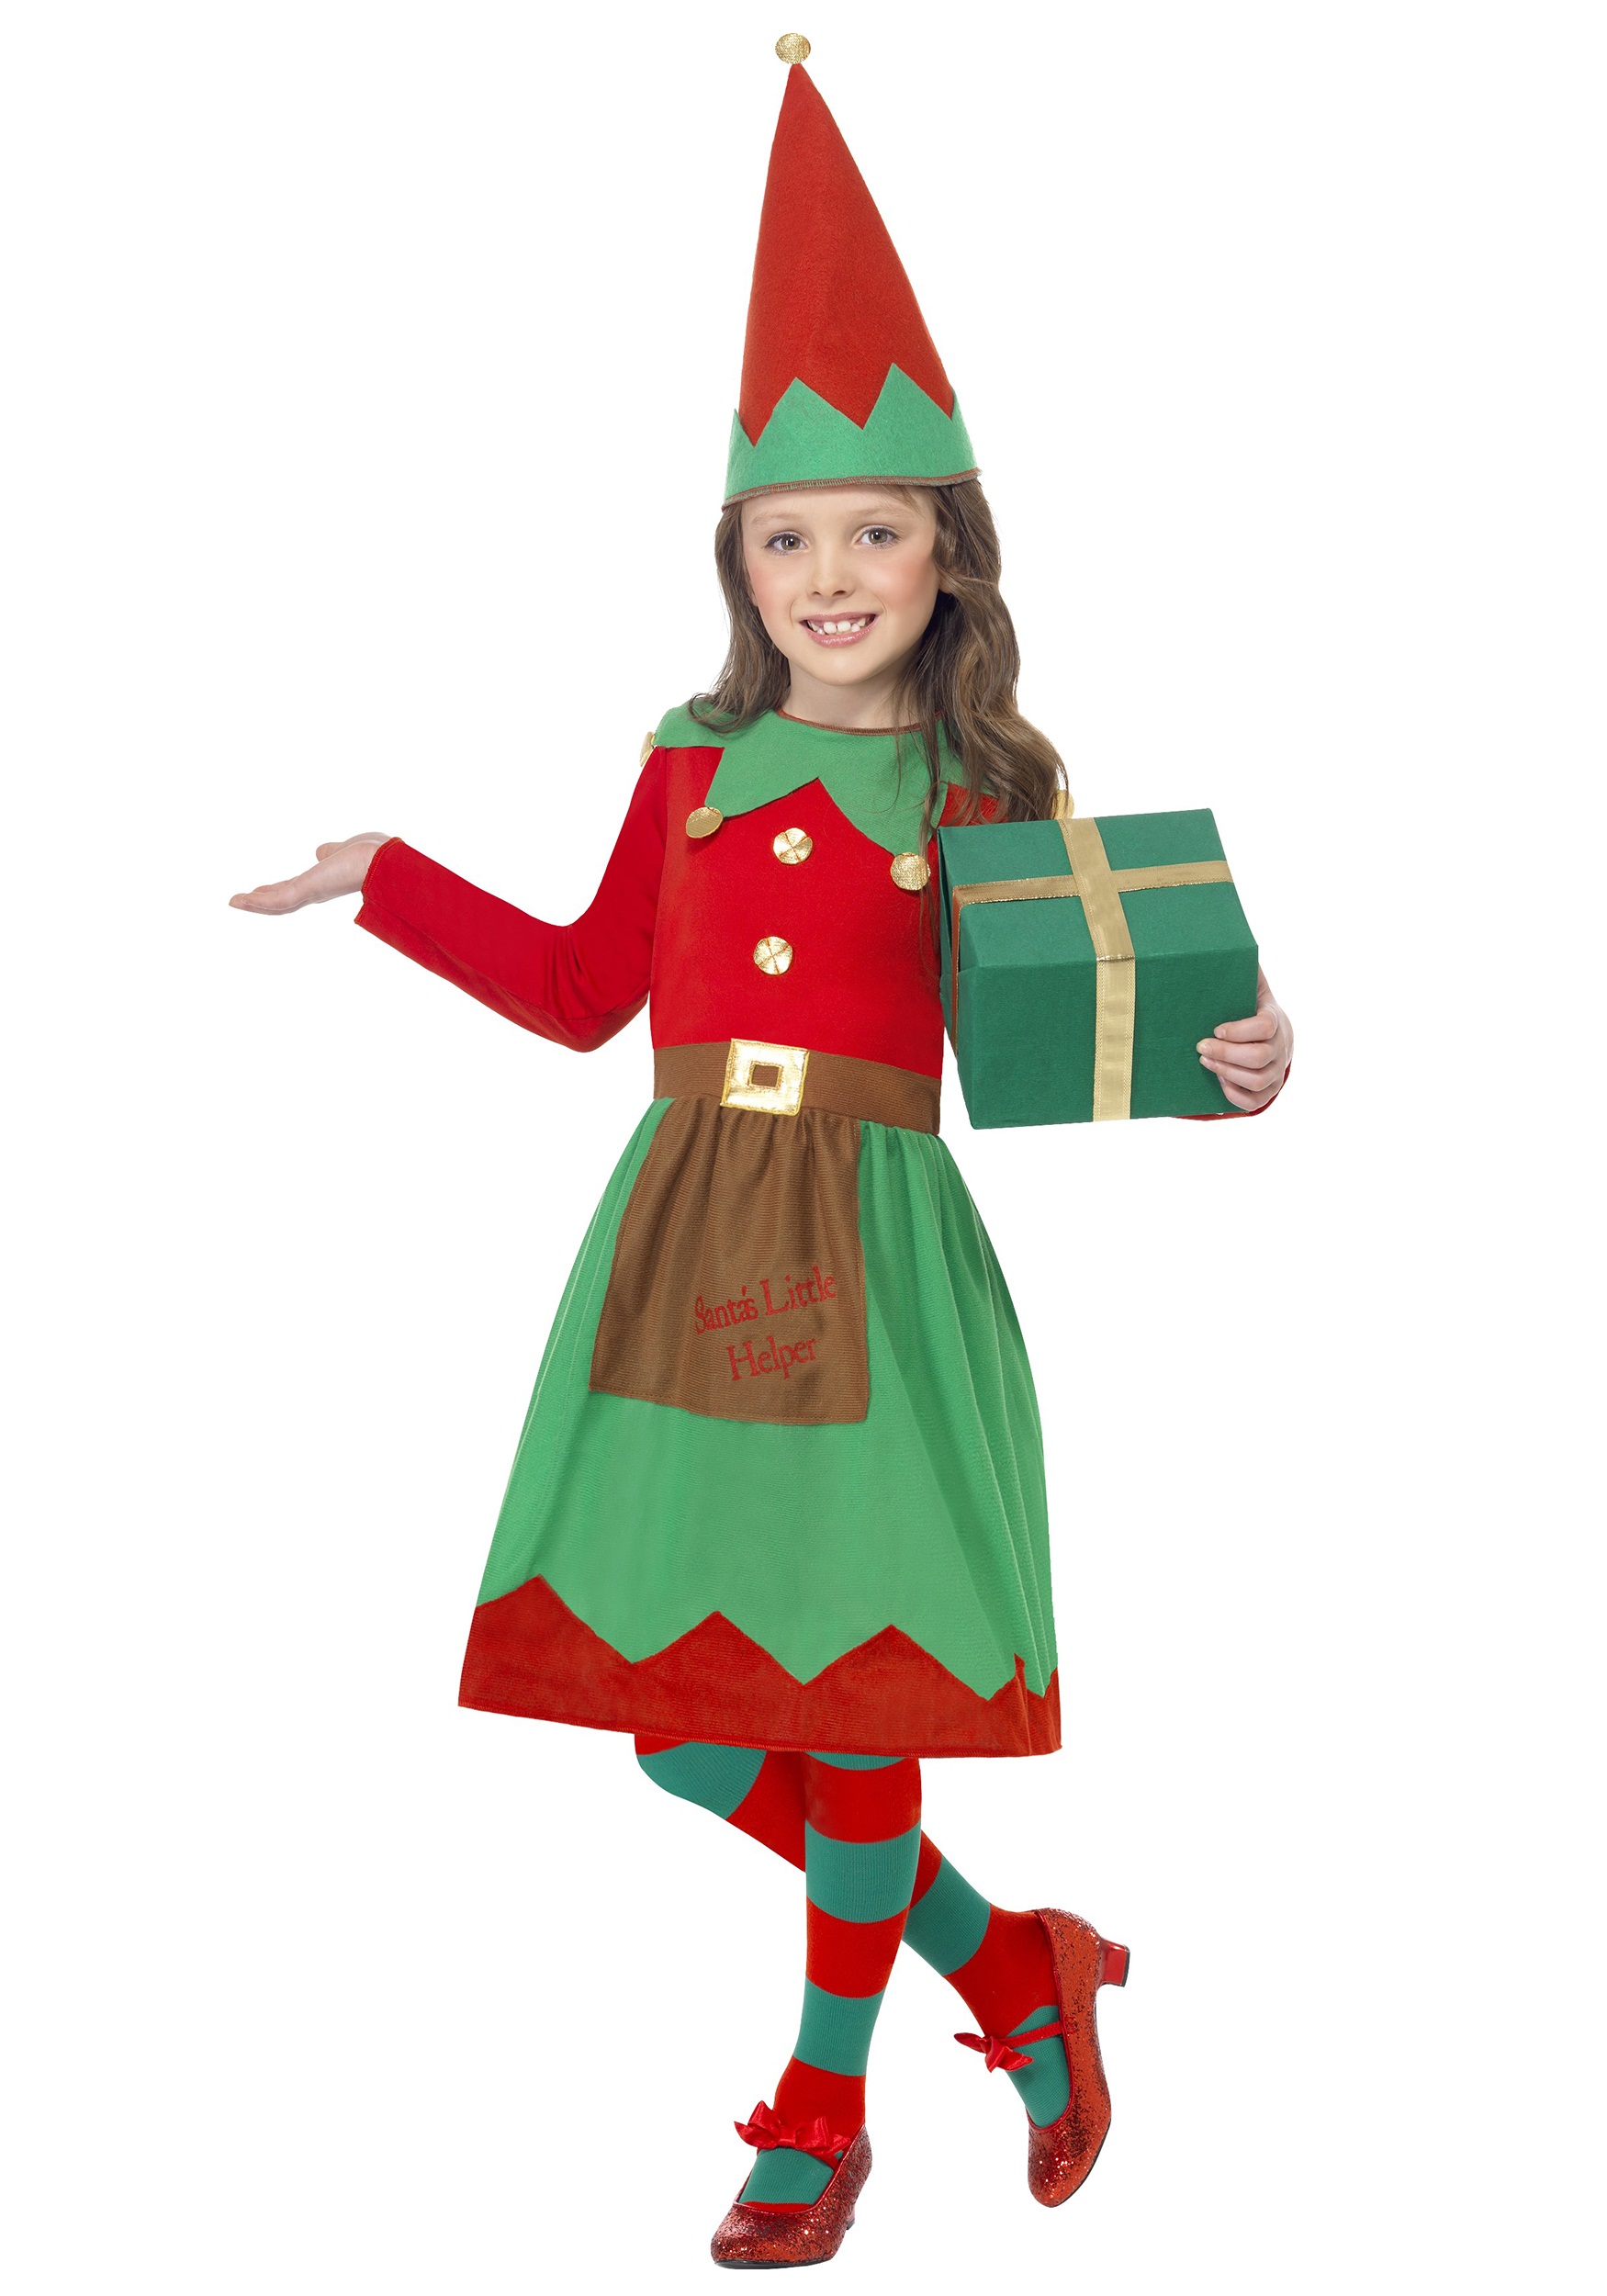 Photos - Fancy Dress Helper Smiffys Girls Santa's Little  Costume Green/Red SM39104 